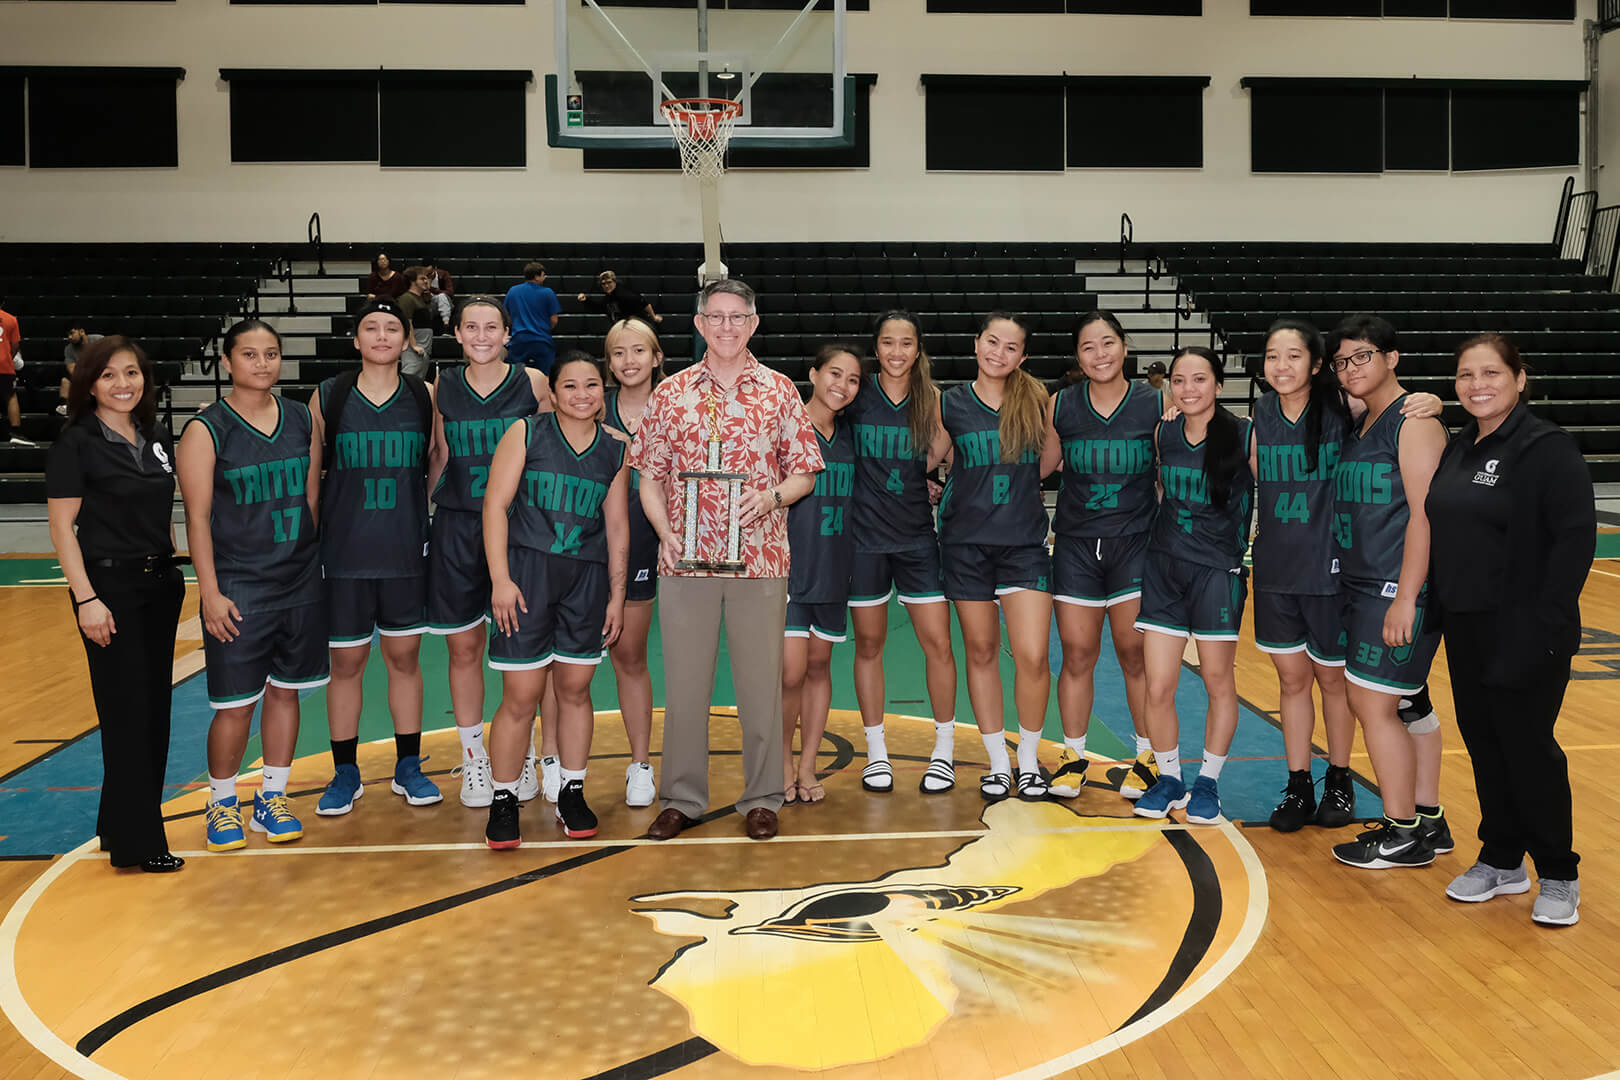 UOG Triton Women’s Basketball Team celebrate a strong season with UOG President Thomas W. Krise.